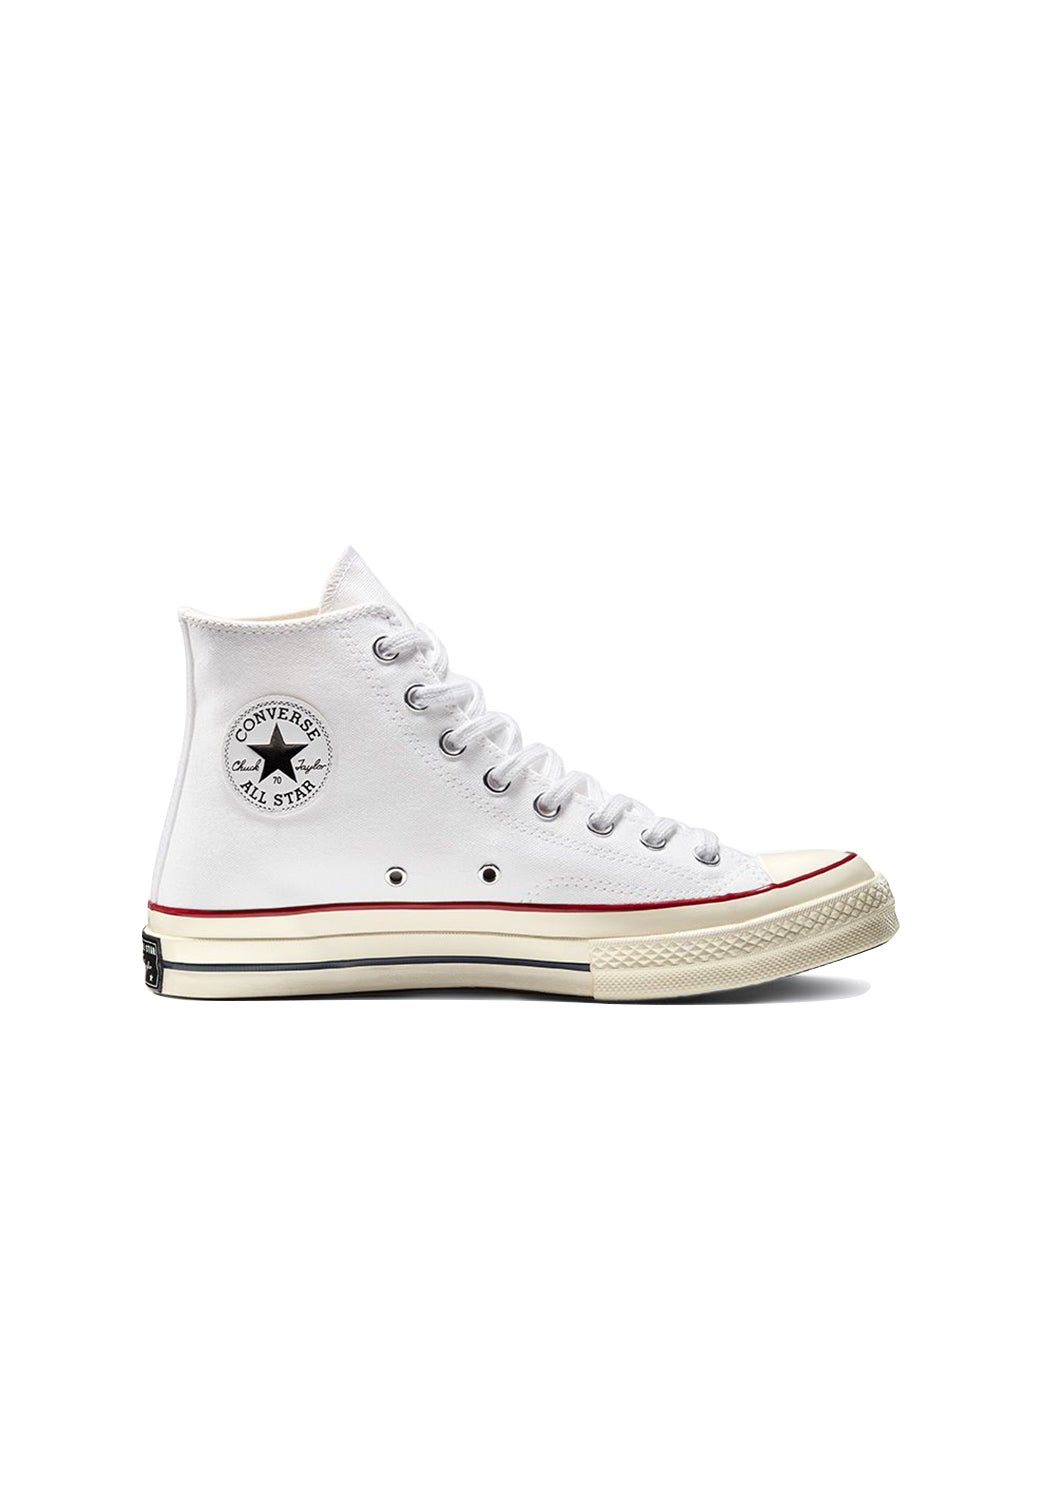 נעלי אולסטאר Chuck 70 גבוהות בצבע לבן לנשים - Converse